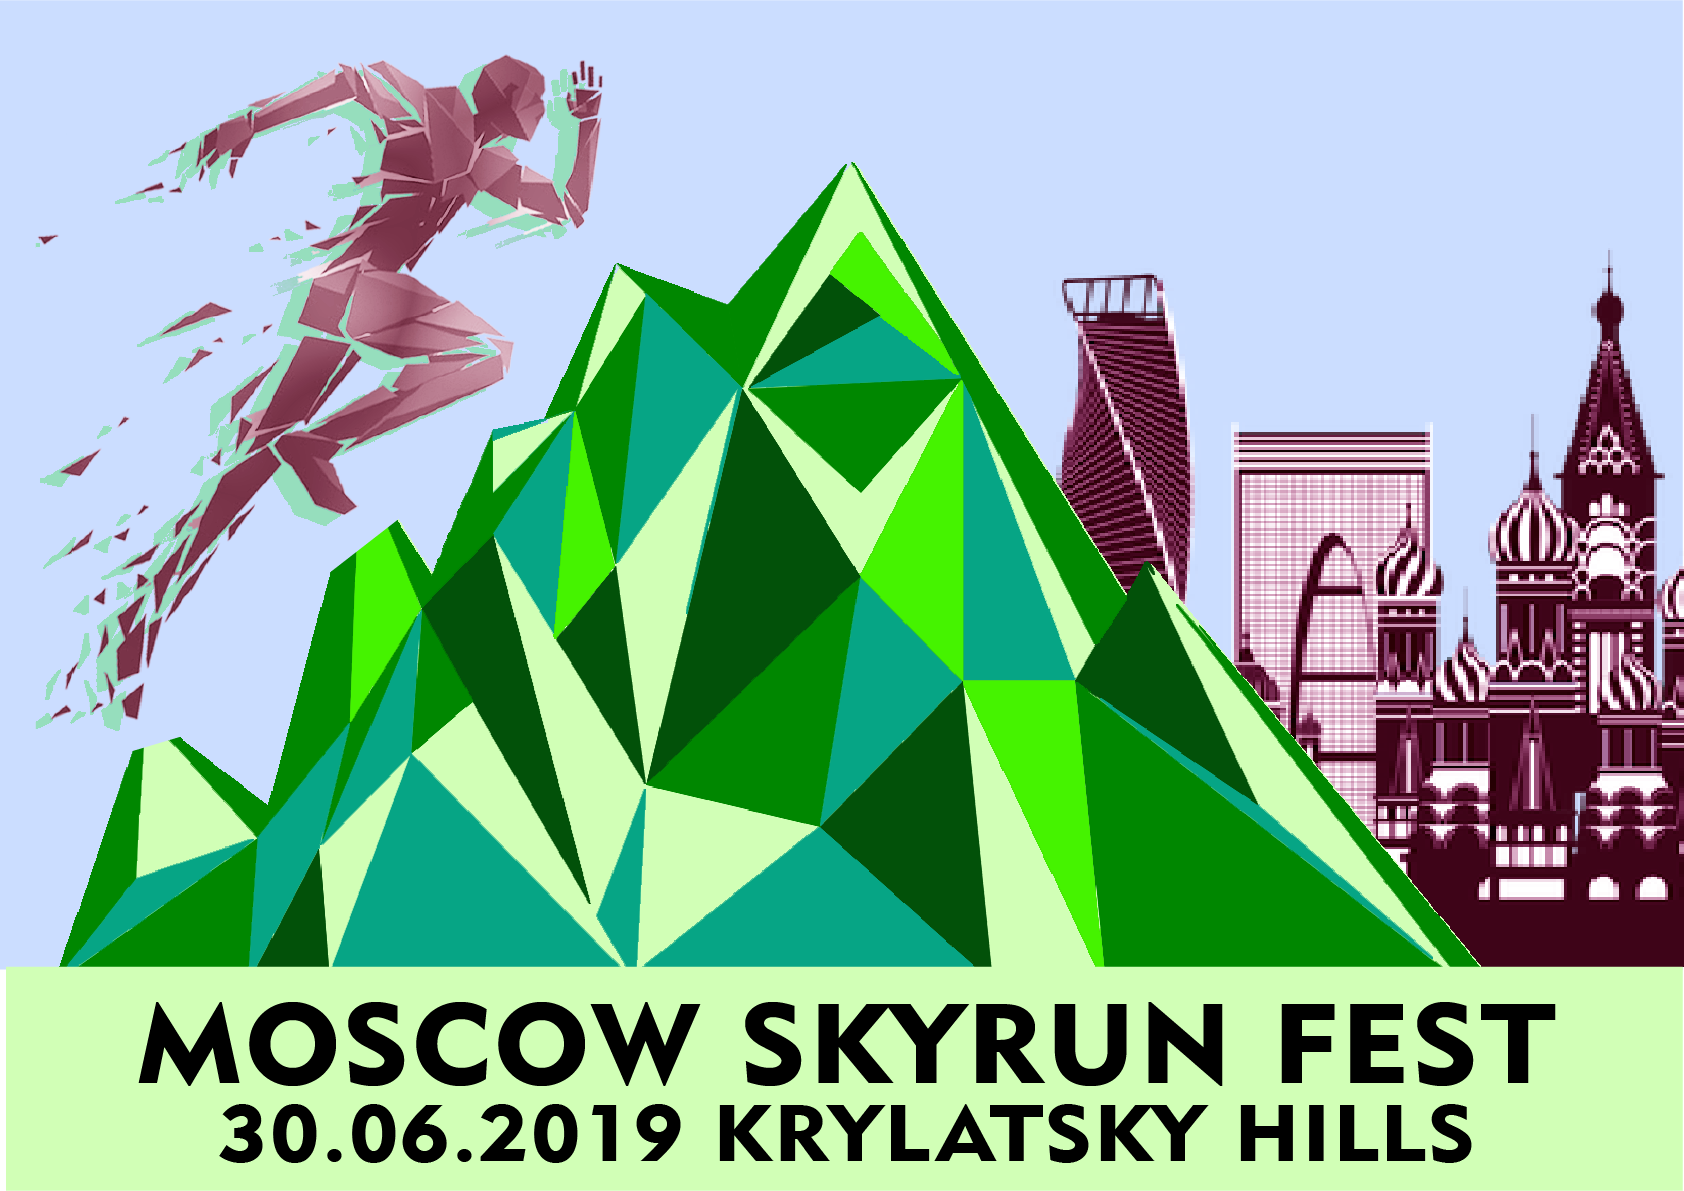 MOSCOW CITY SKYRUN FEST